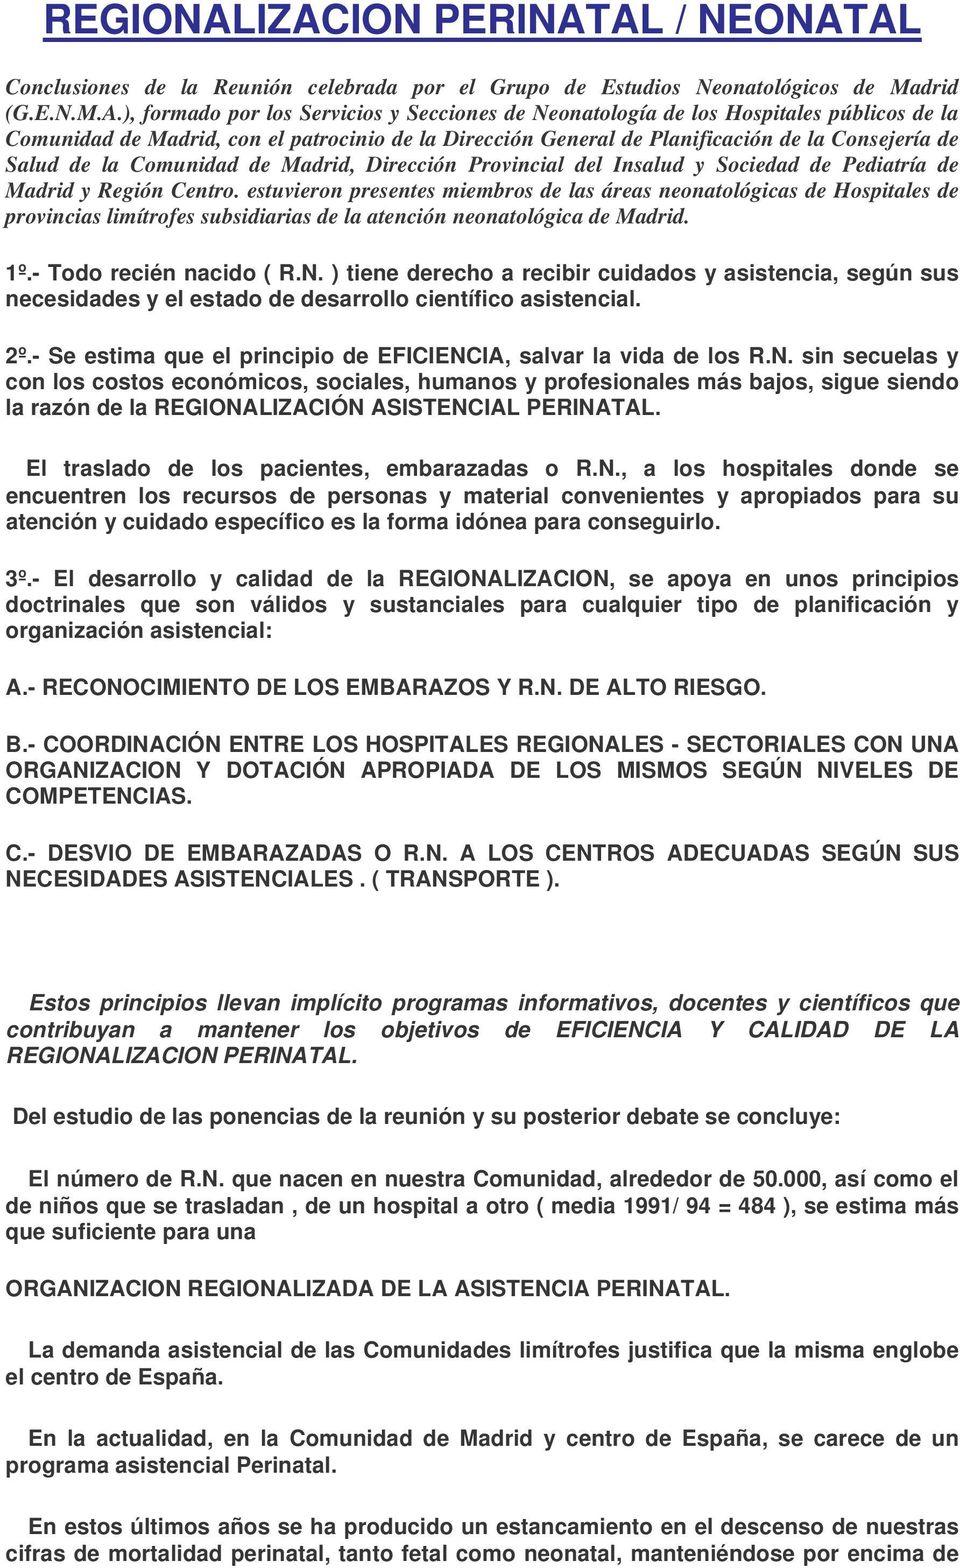 Hospitales públicos de la Comunidad de Madrid, con el patrocinio de la Dirección General de Planificación de la Consejería de Salud de la Comunidad de Madrid, Dirección Provincial del Insalud y